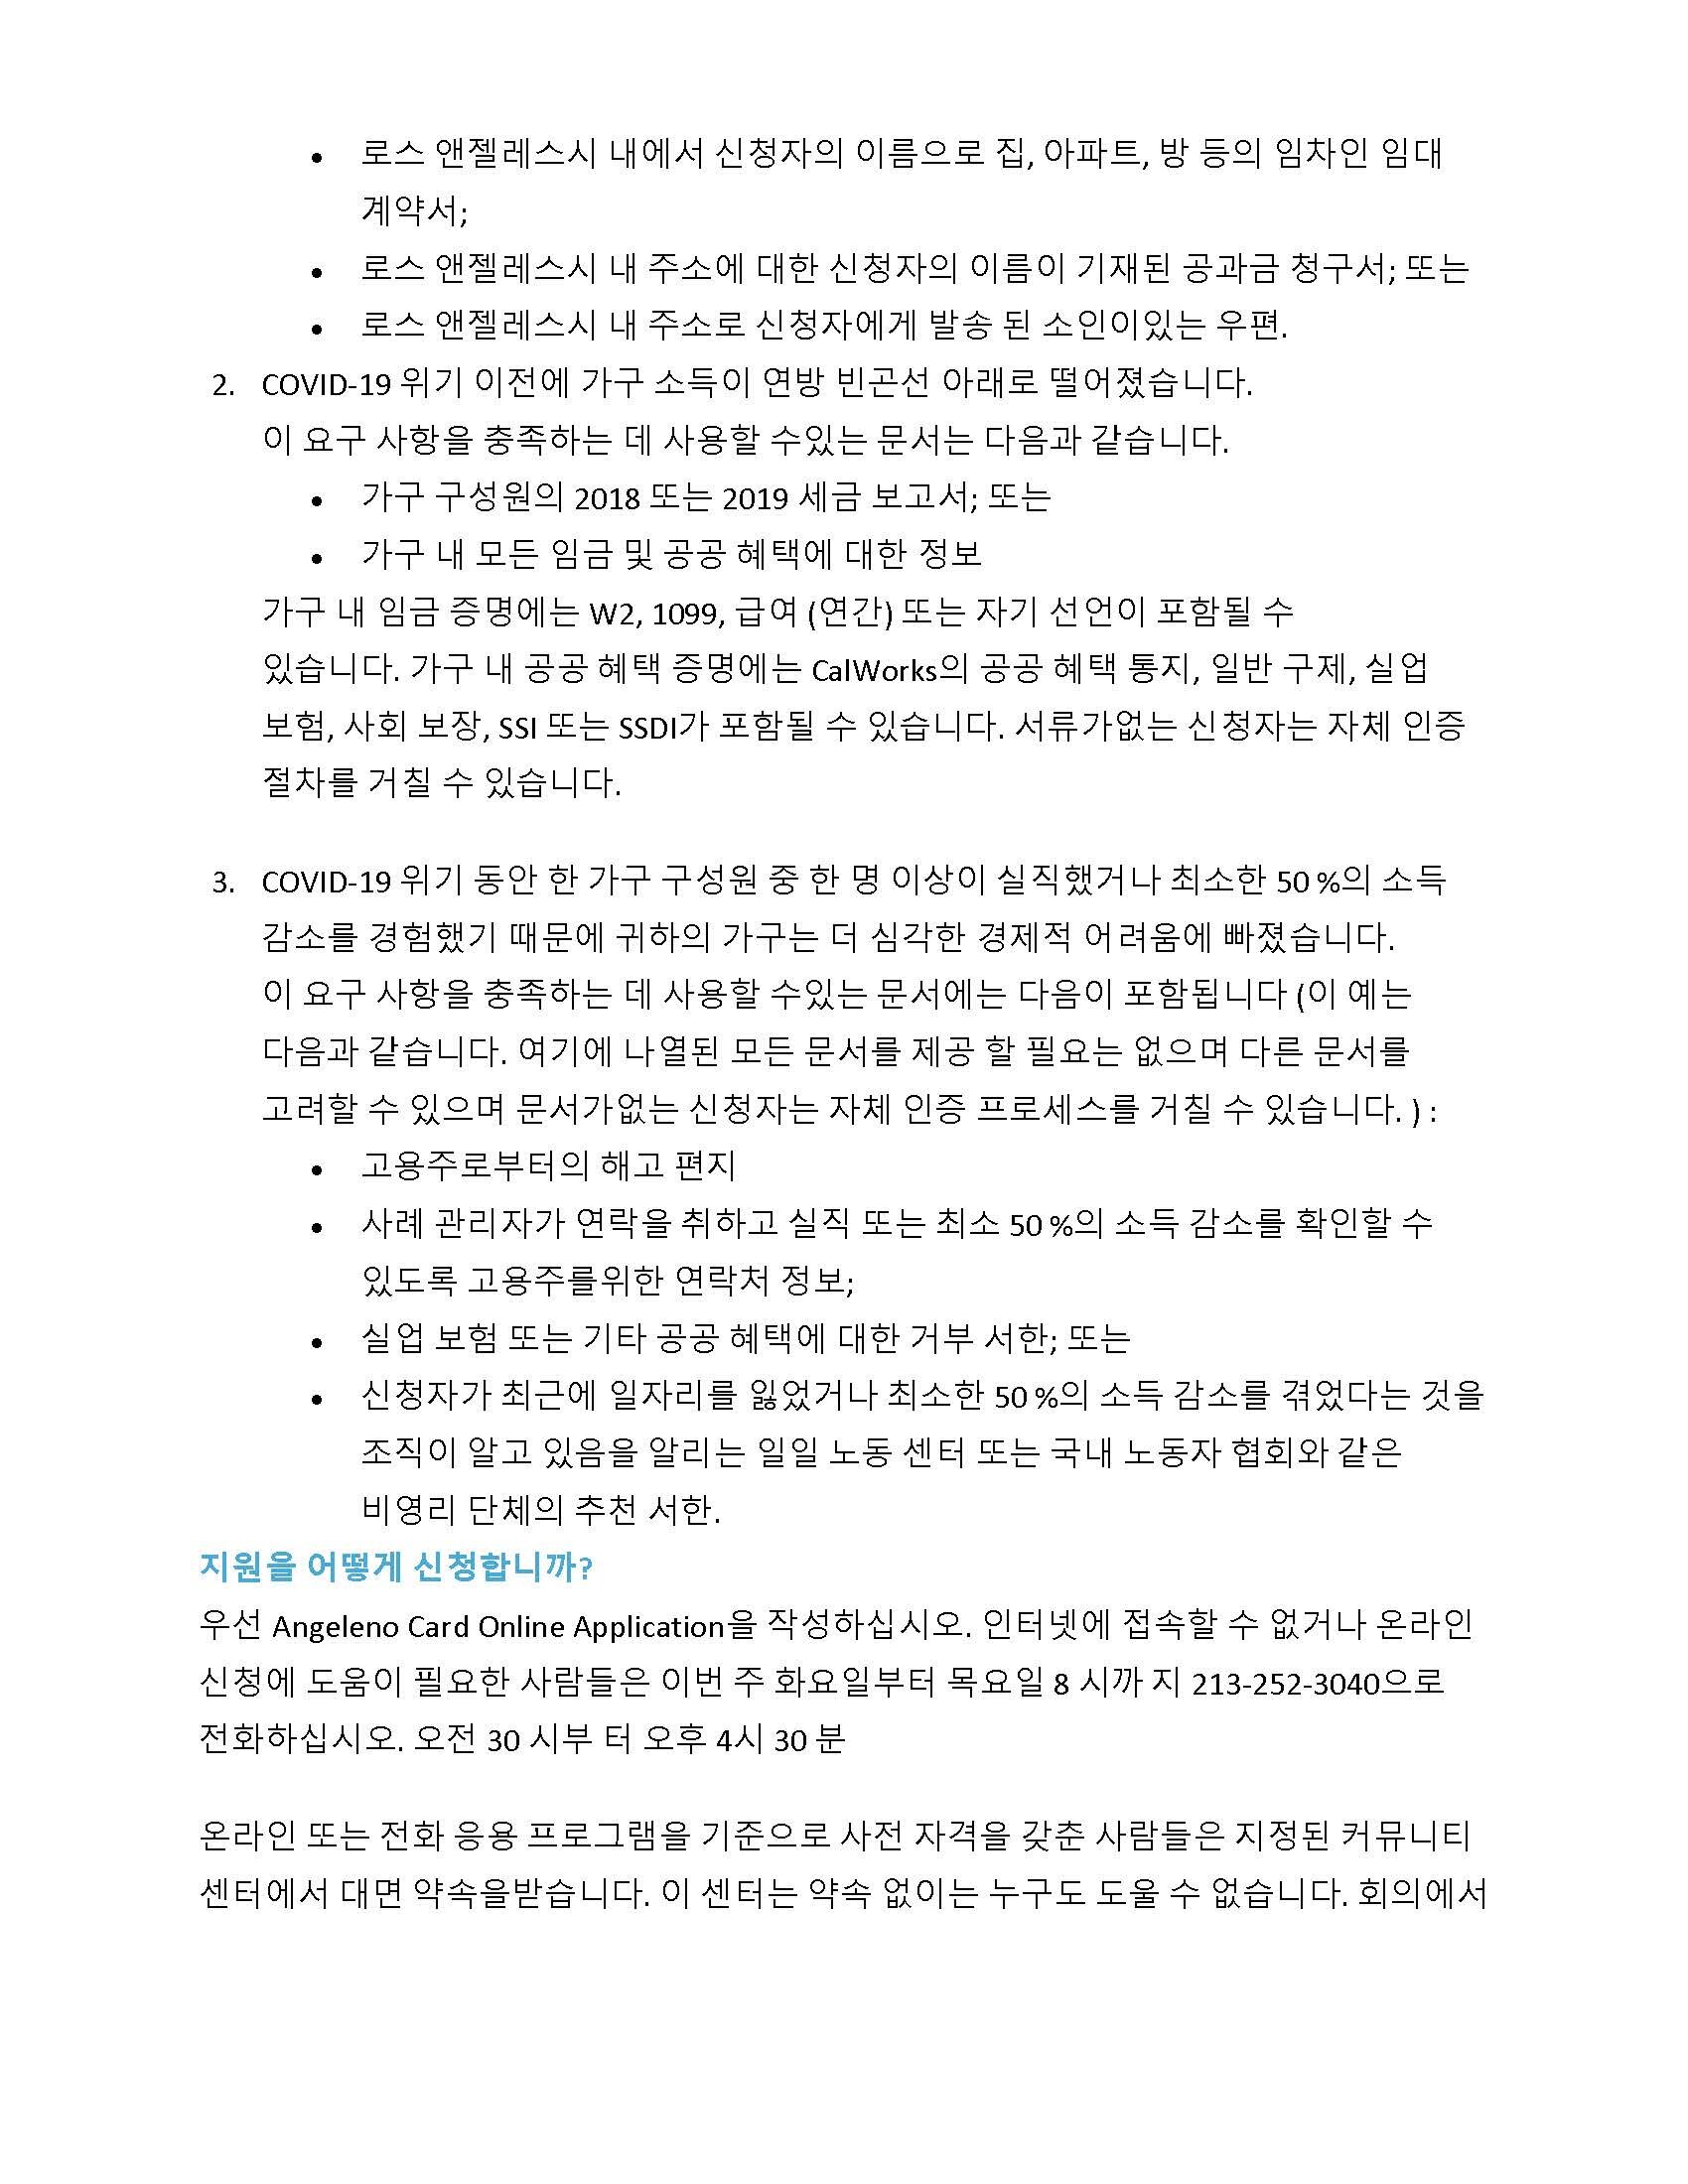 Angeleno Fund Korean_Page_3.jpg